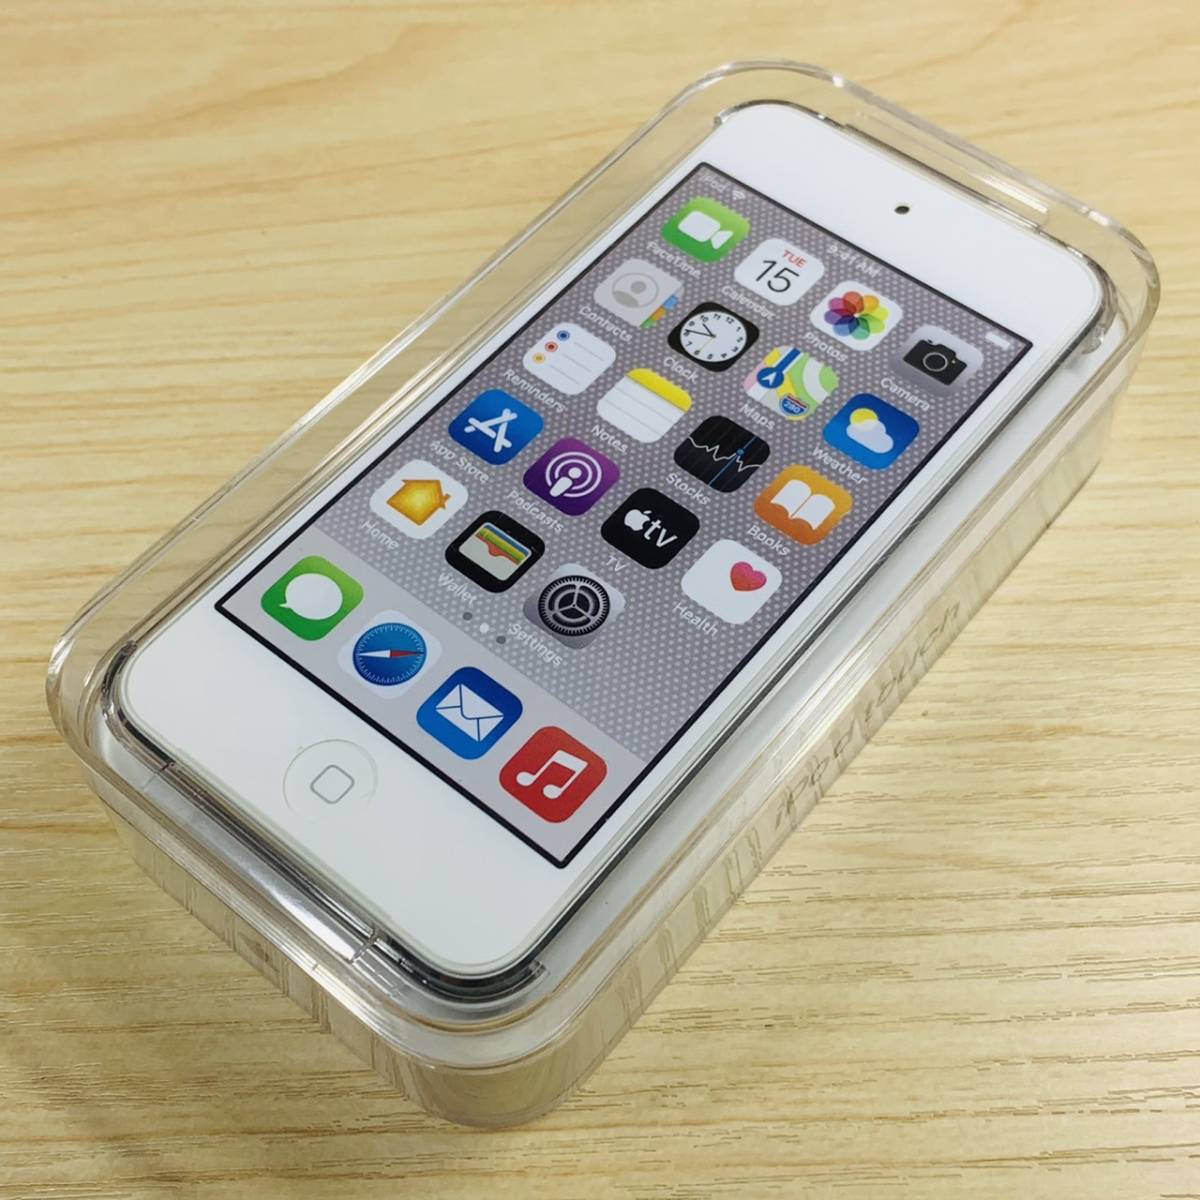 新品Apple iPod Touch 第7世代32GB シルバーMVHV2J/A P18｜代購幫